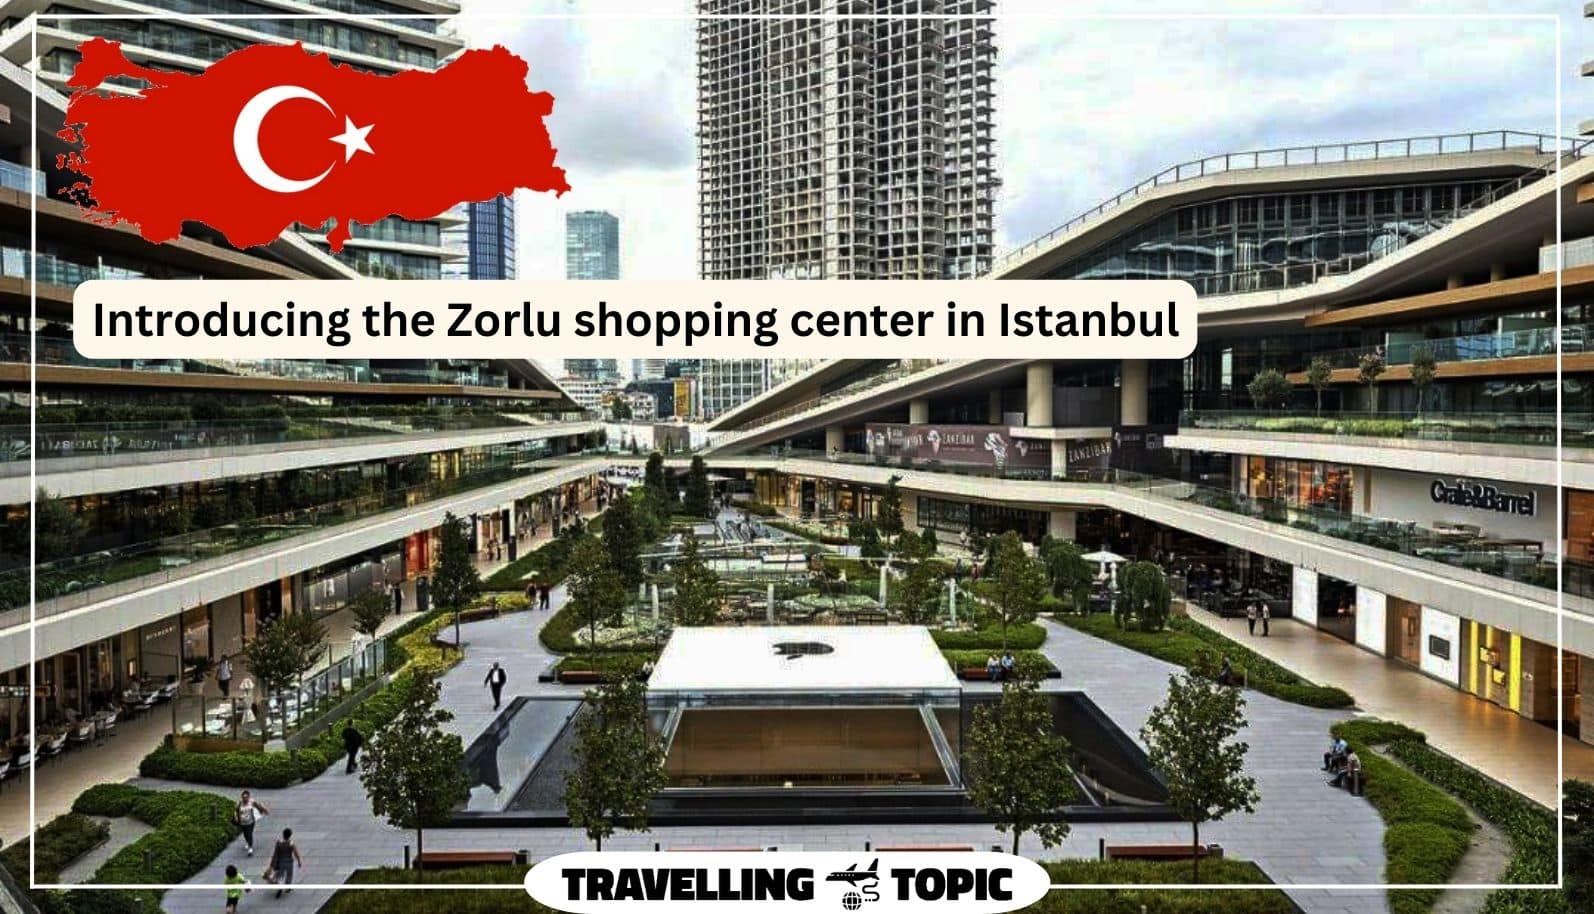 Zorlu Center Shopping Mall, Istanbul 🇹🇷 [4K] 